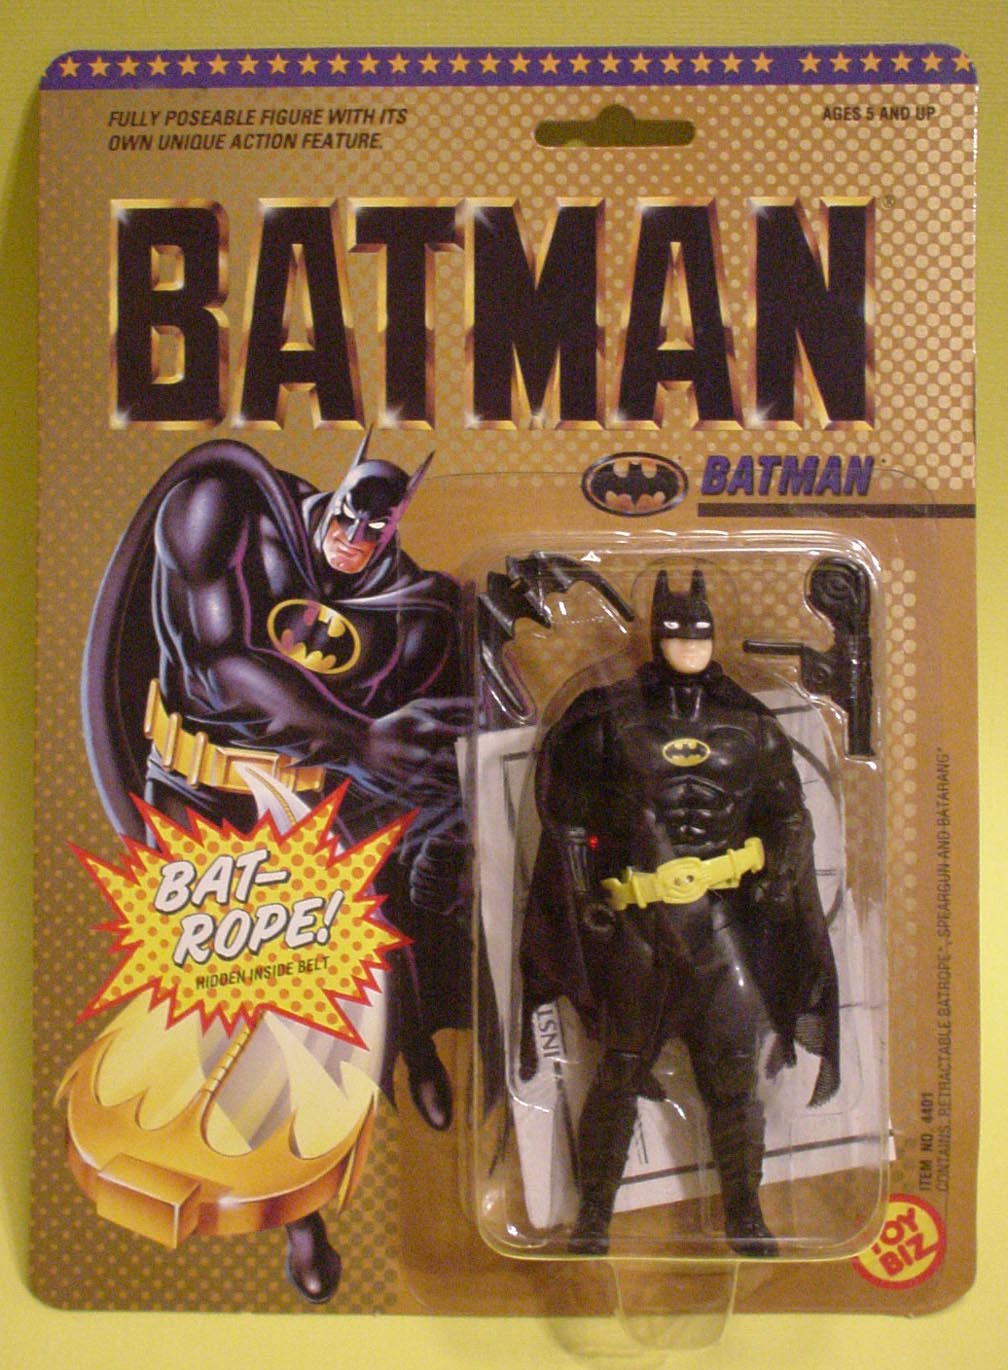 1988 batman action figure